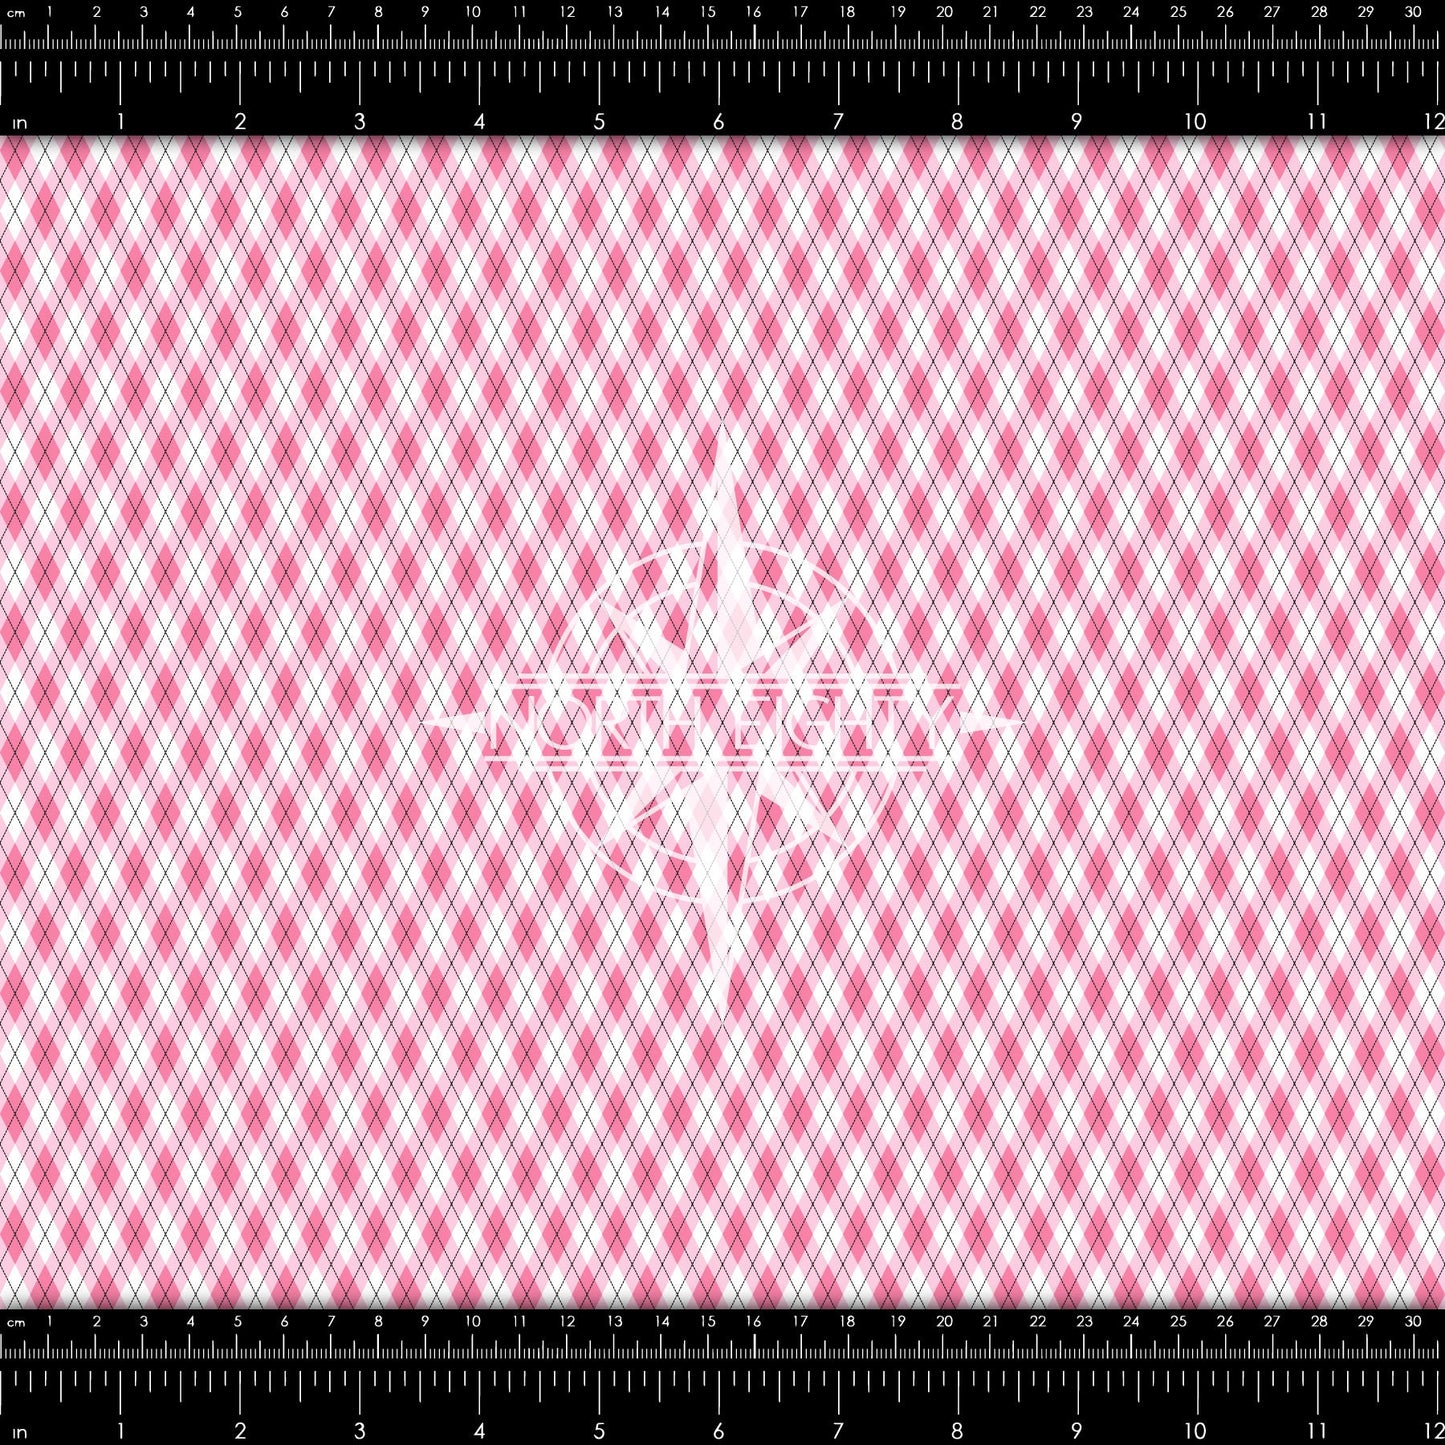 Pink Argyle Heat Transfer Vinyl - Valentine's Day htv - Heat Transfer Vinyl - Adhesive Craft Vinyl